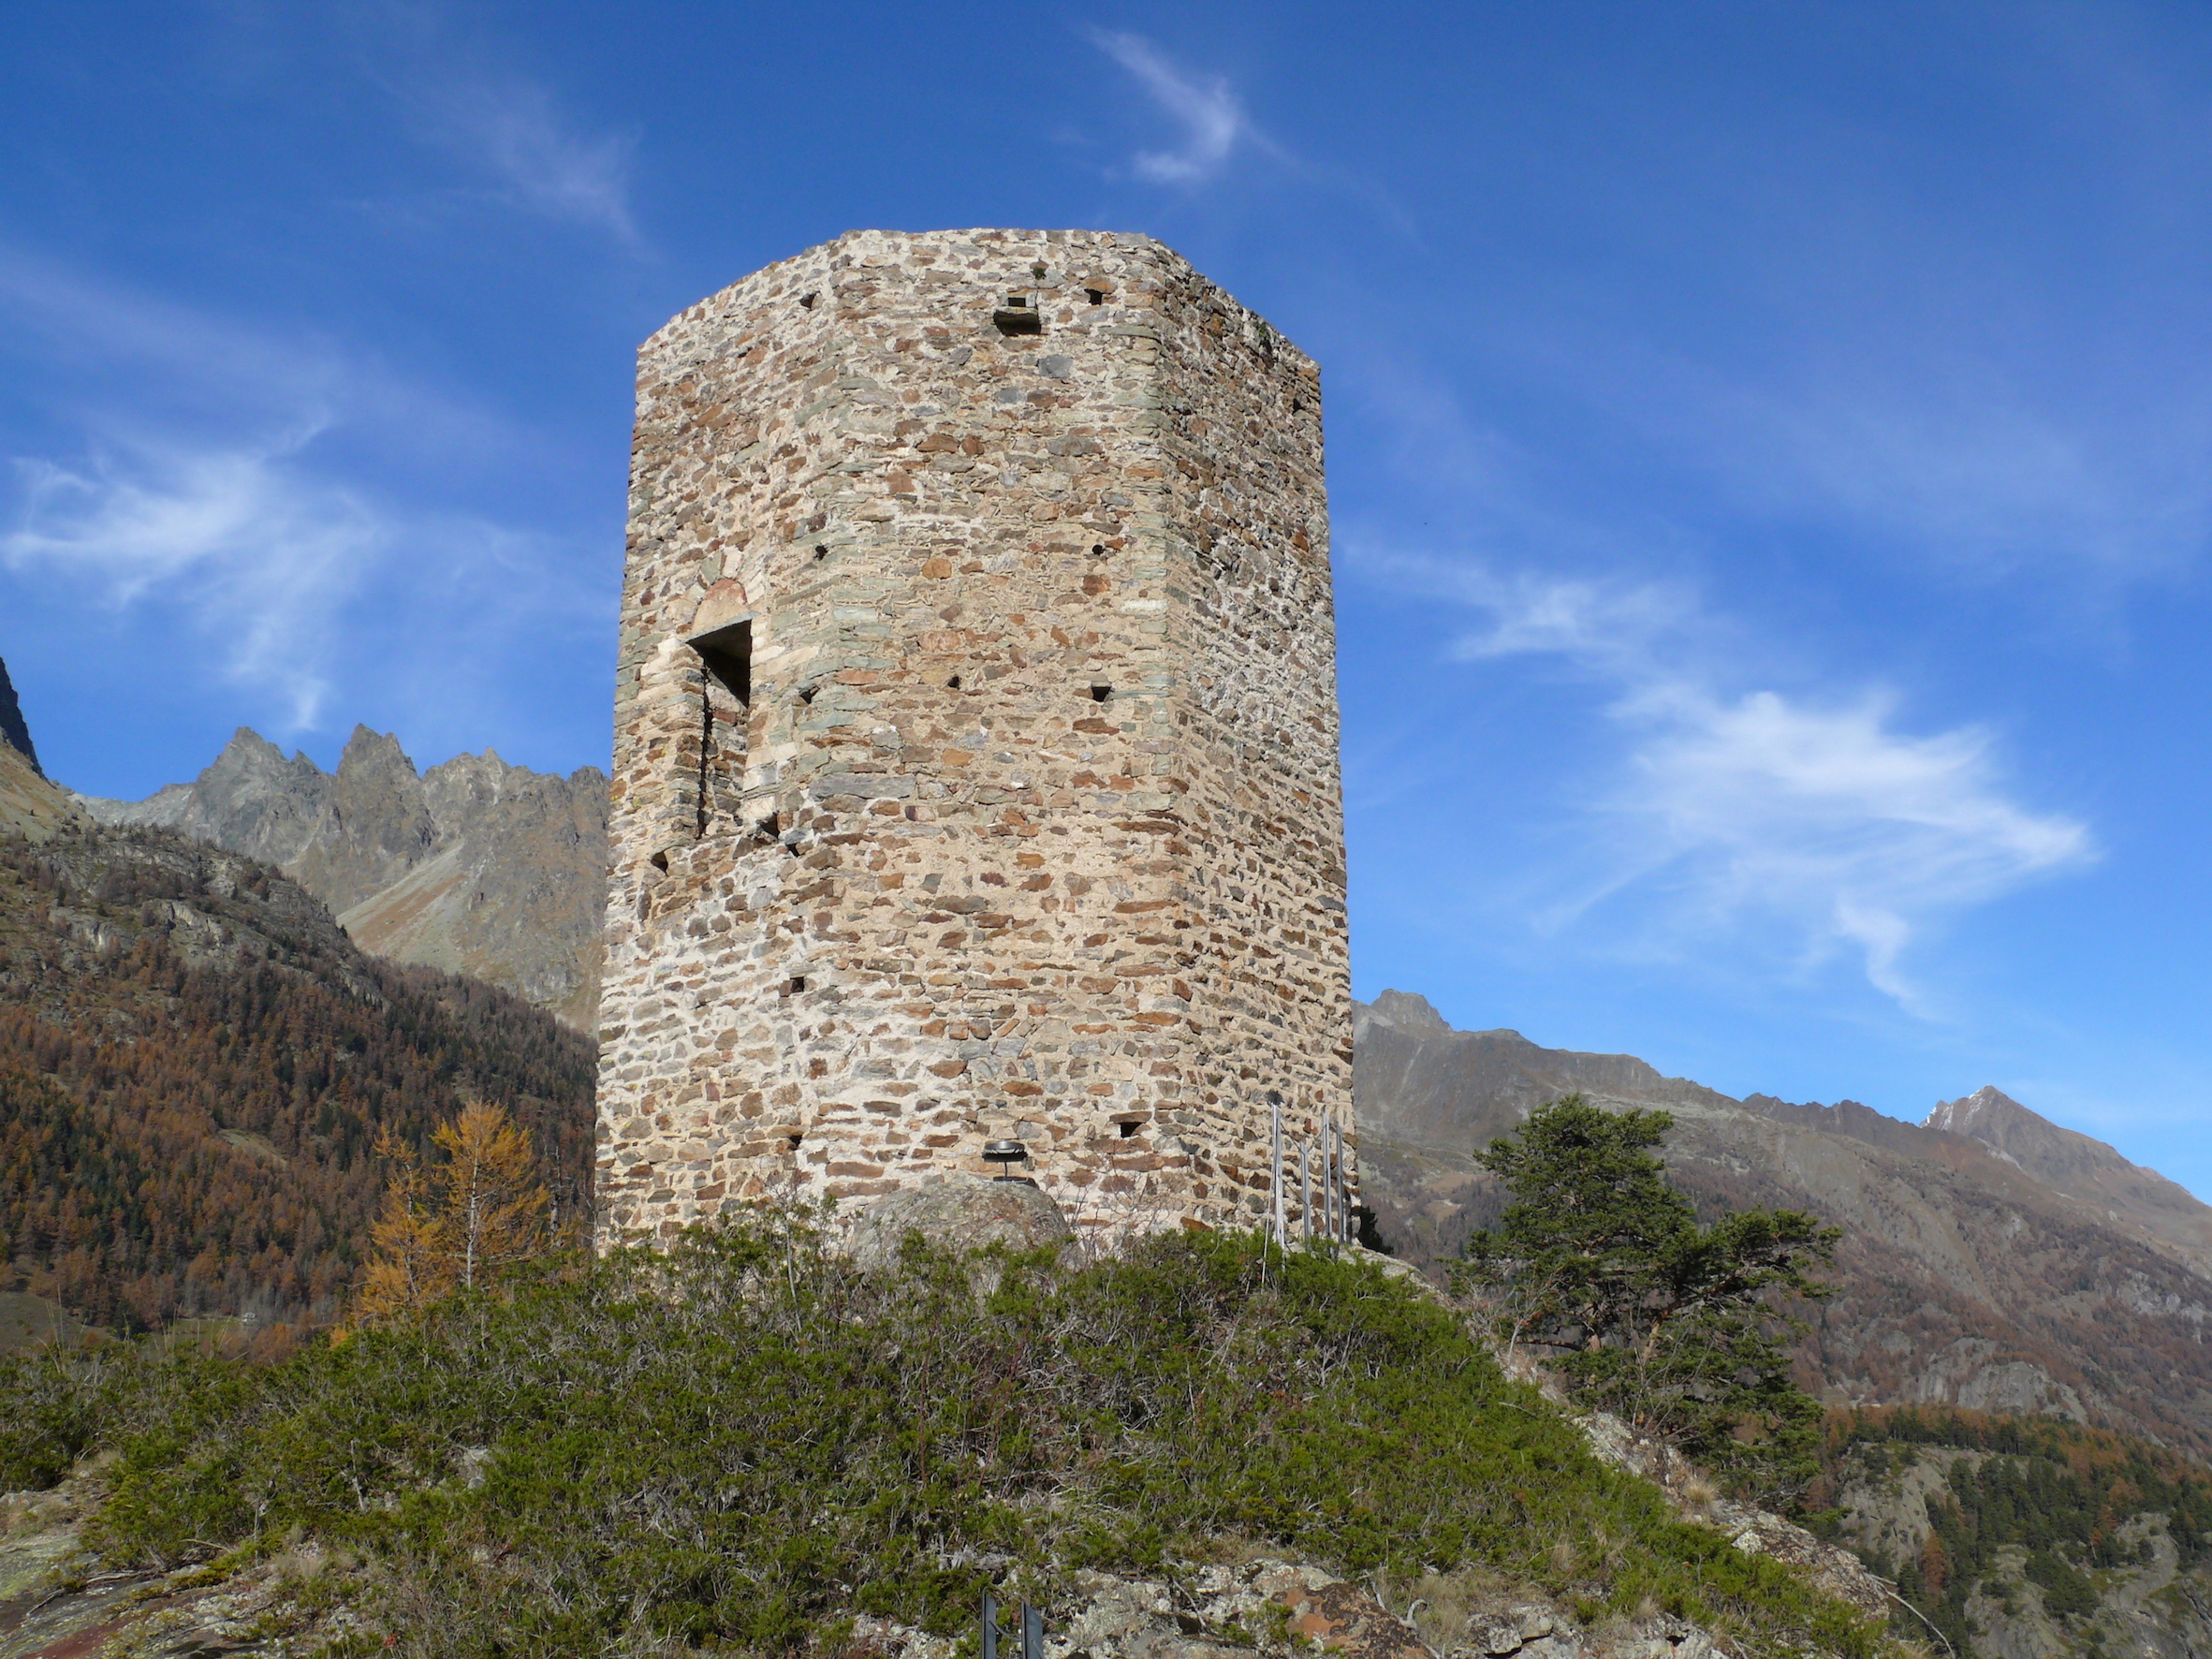 La torre @ Riqualificazione torre "Tornalla" a Oyace (AO)